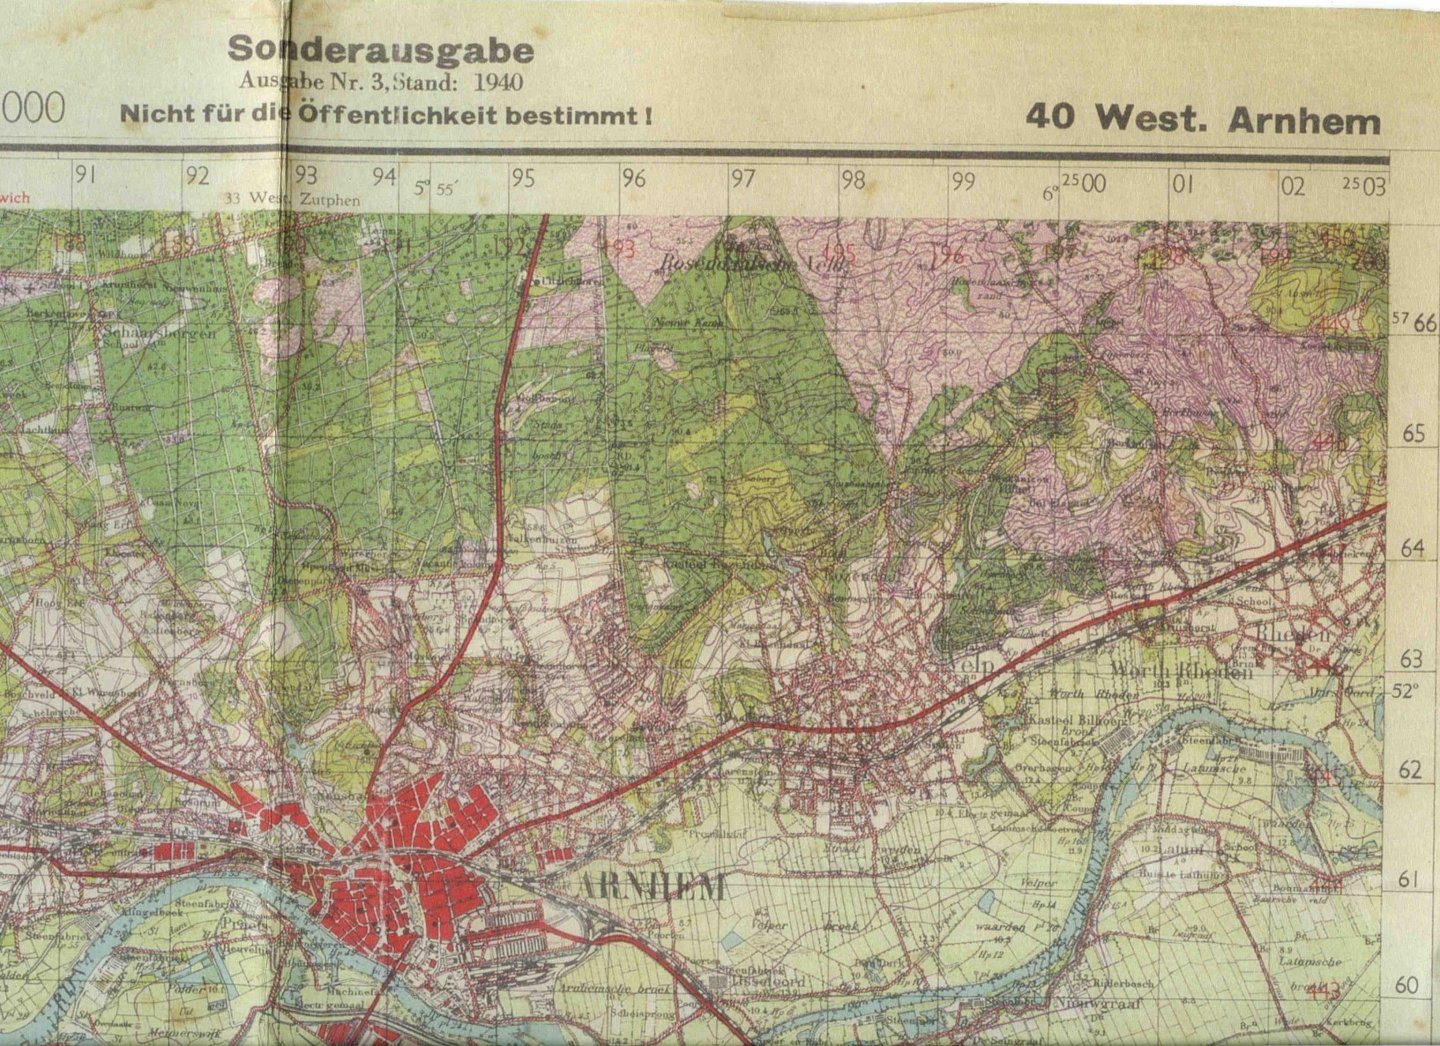 AAA div - Sonderausgabe Topografische Karte der Niederlande 1:50.000, 40 West Arnhem,